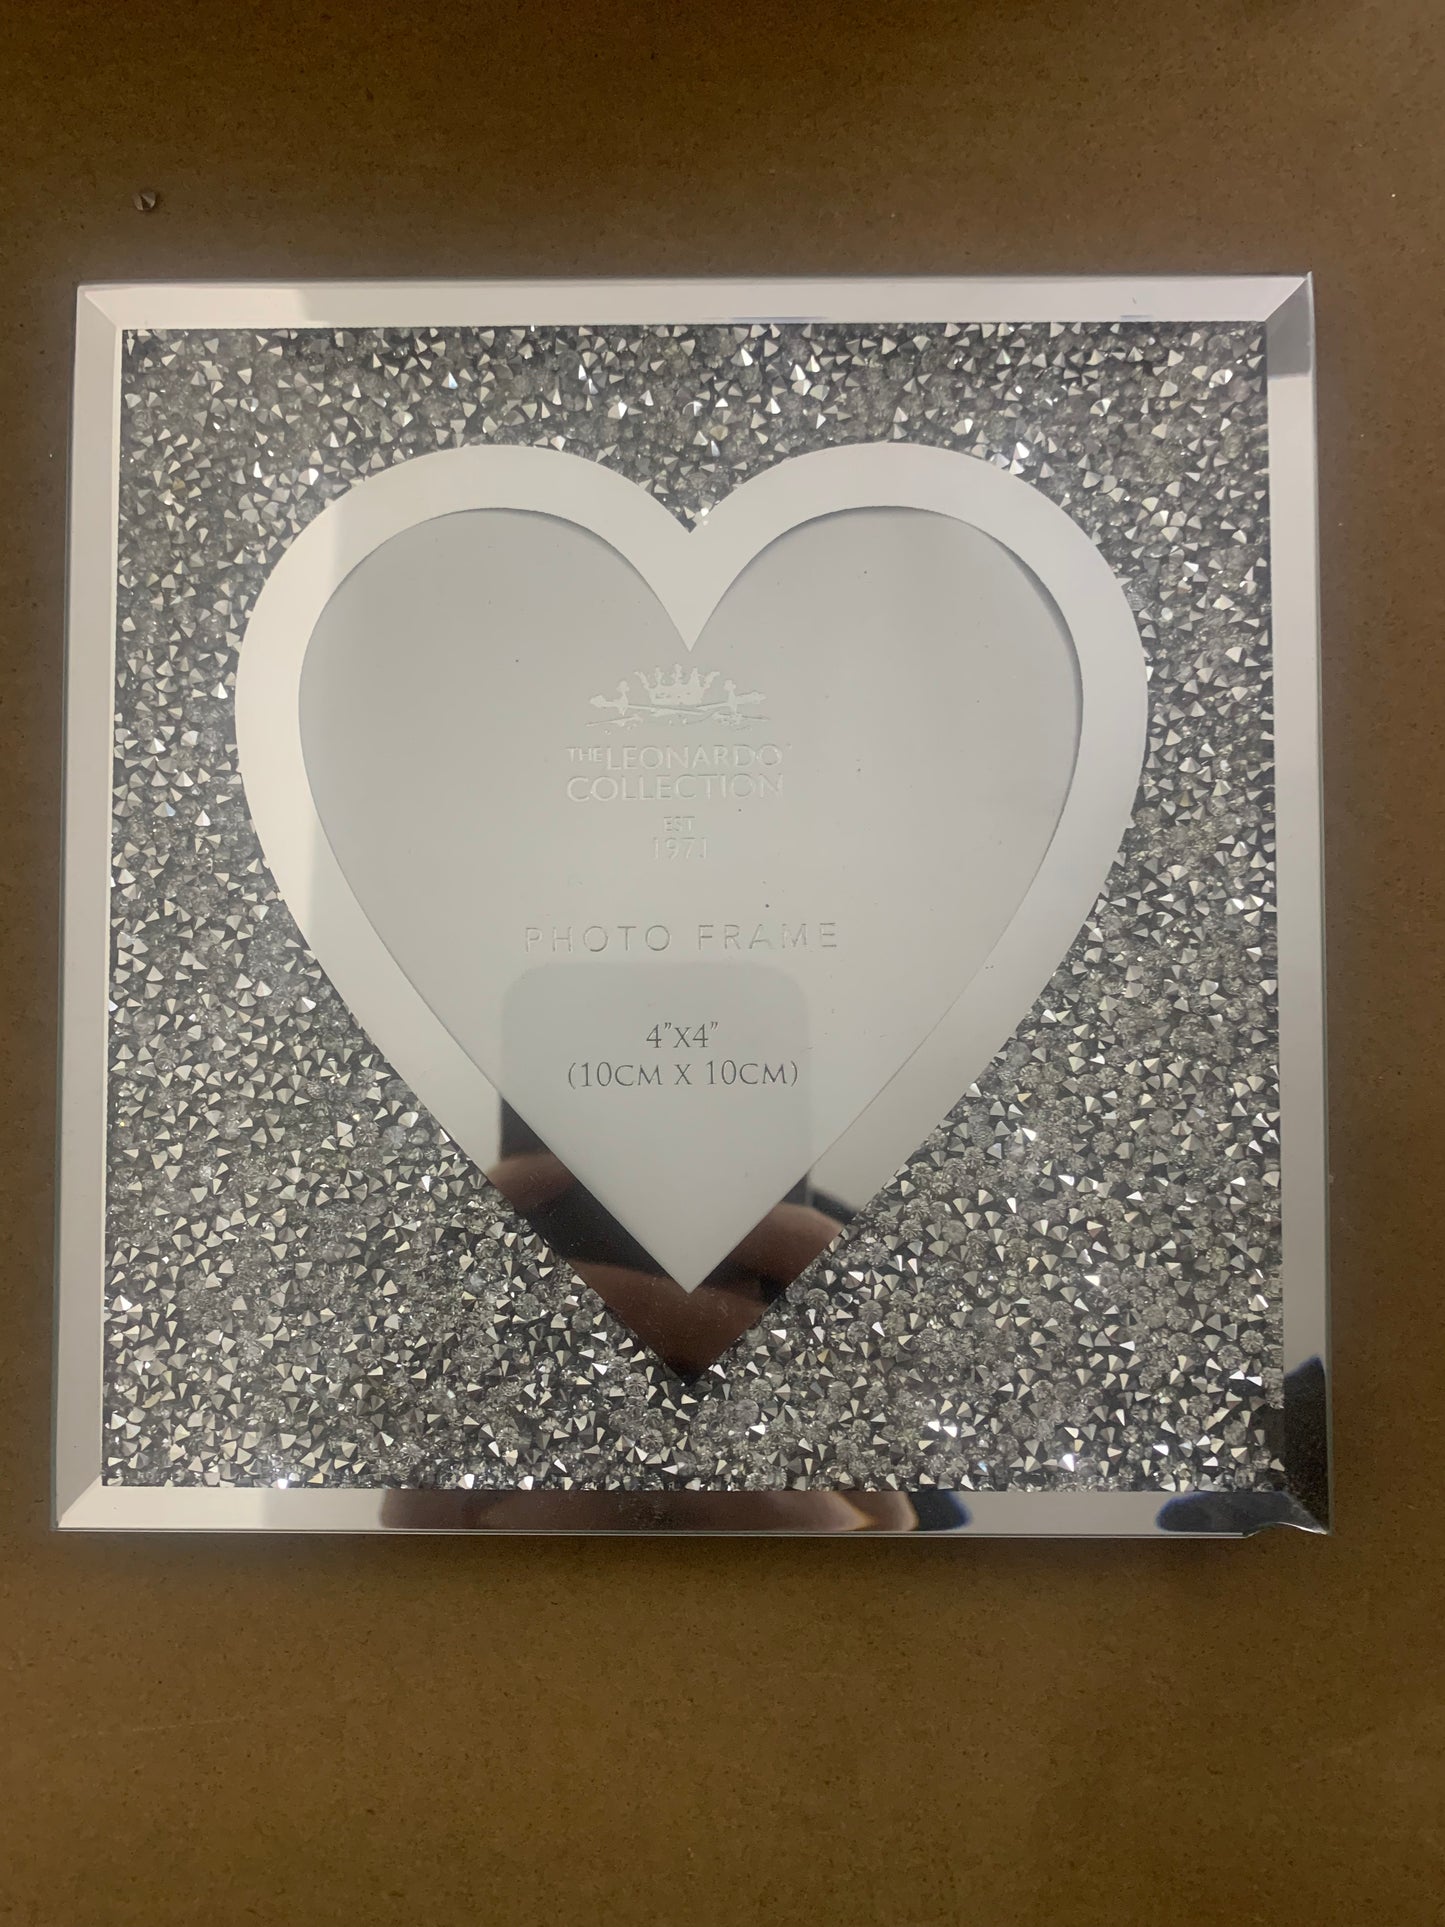 Flawed Crystal Glitz Heart Frame 4x4"